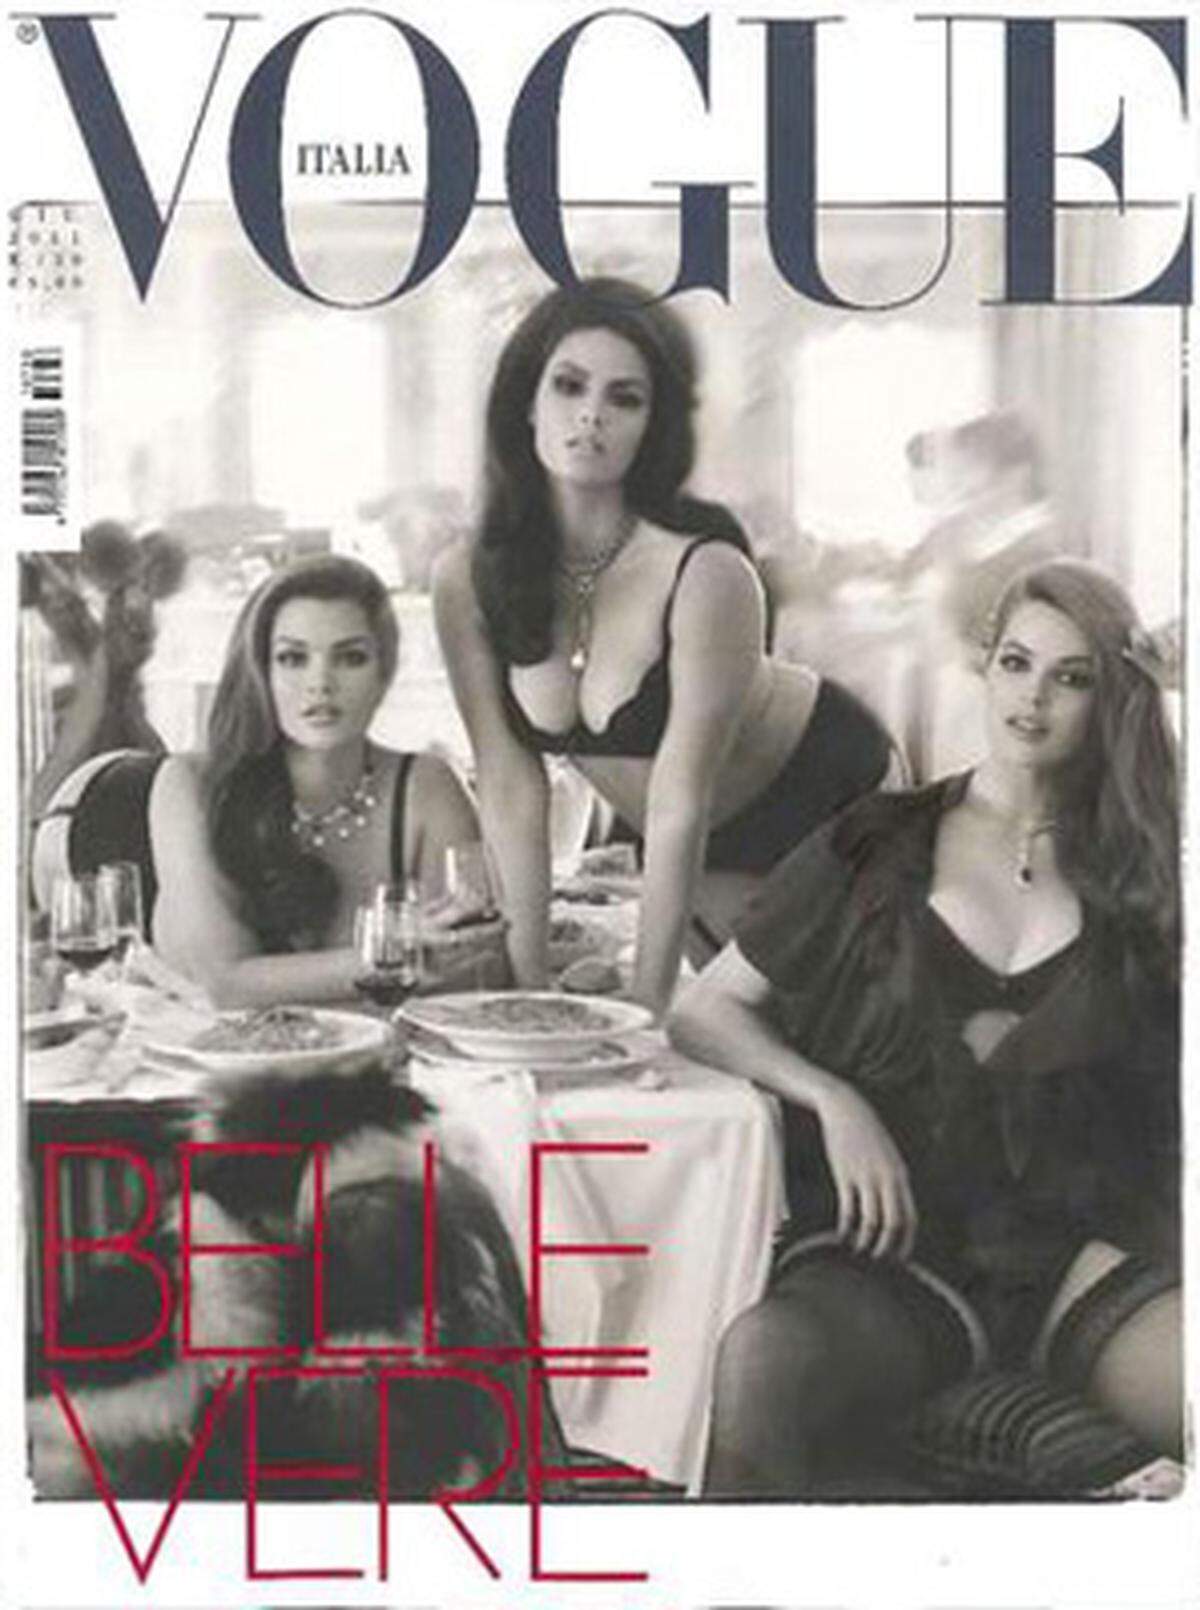 Franca Sozzani versucht immer wieder mit Grenzen der Modeindustrie auszudehnen. So war die italienische Vogue auch eine der ersten Modemagazine, die füllige Models am Cover abbildete.